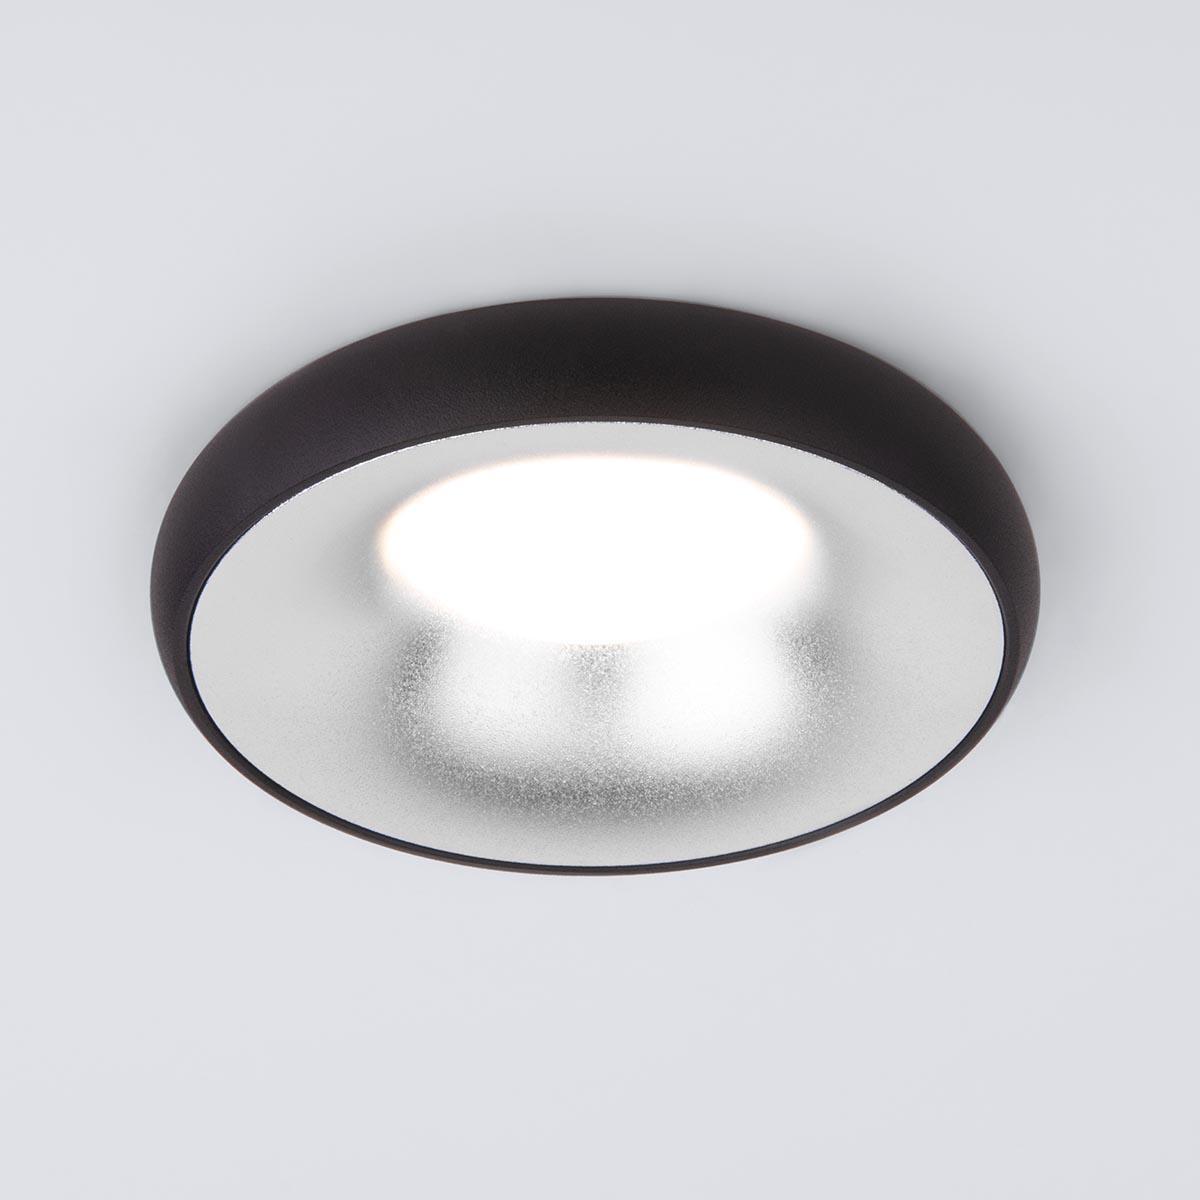 Встраиваемый светильник Elektrostandard 118 MR16 серебро/черный a053349